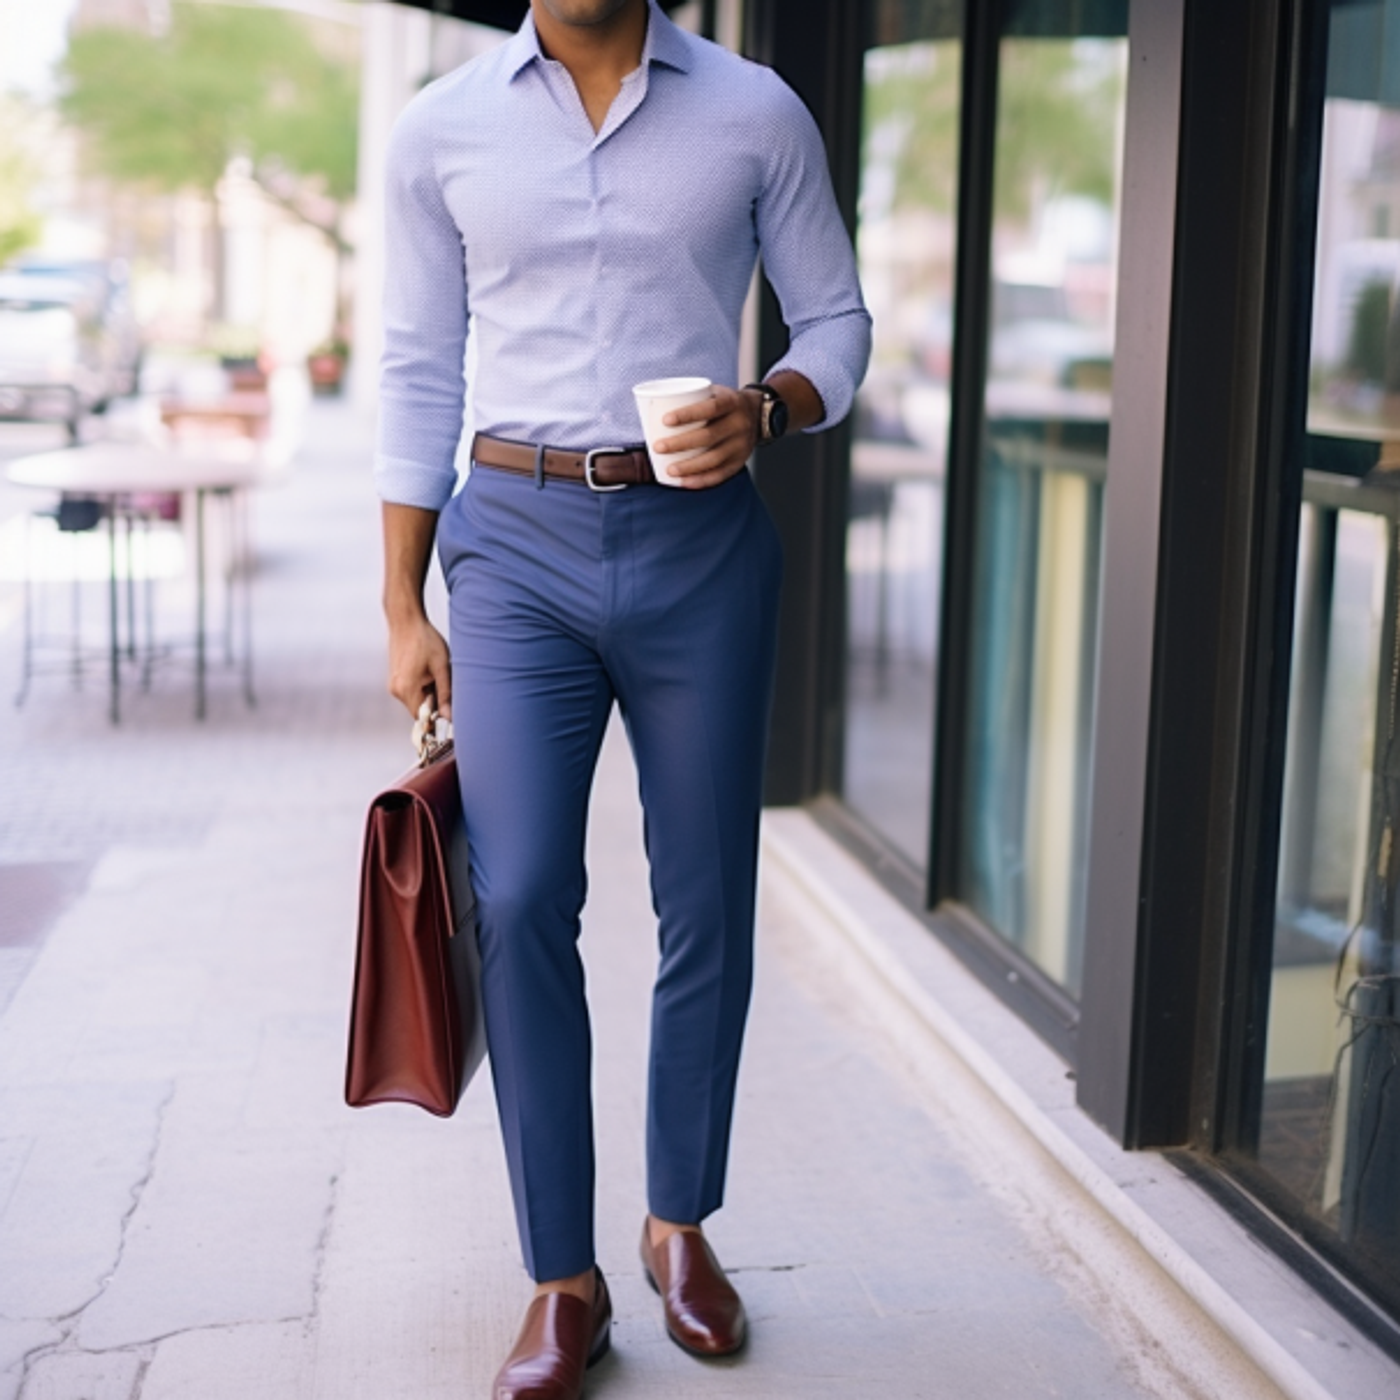 Best formal combination for men | Formal attire for men, Blue shirt outfit  men, Shirt outfit men